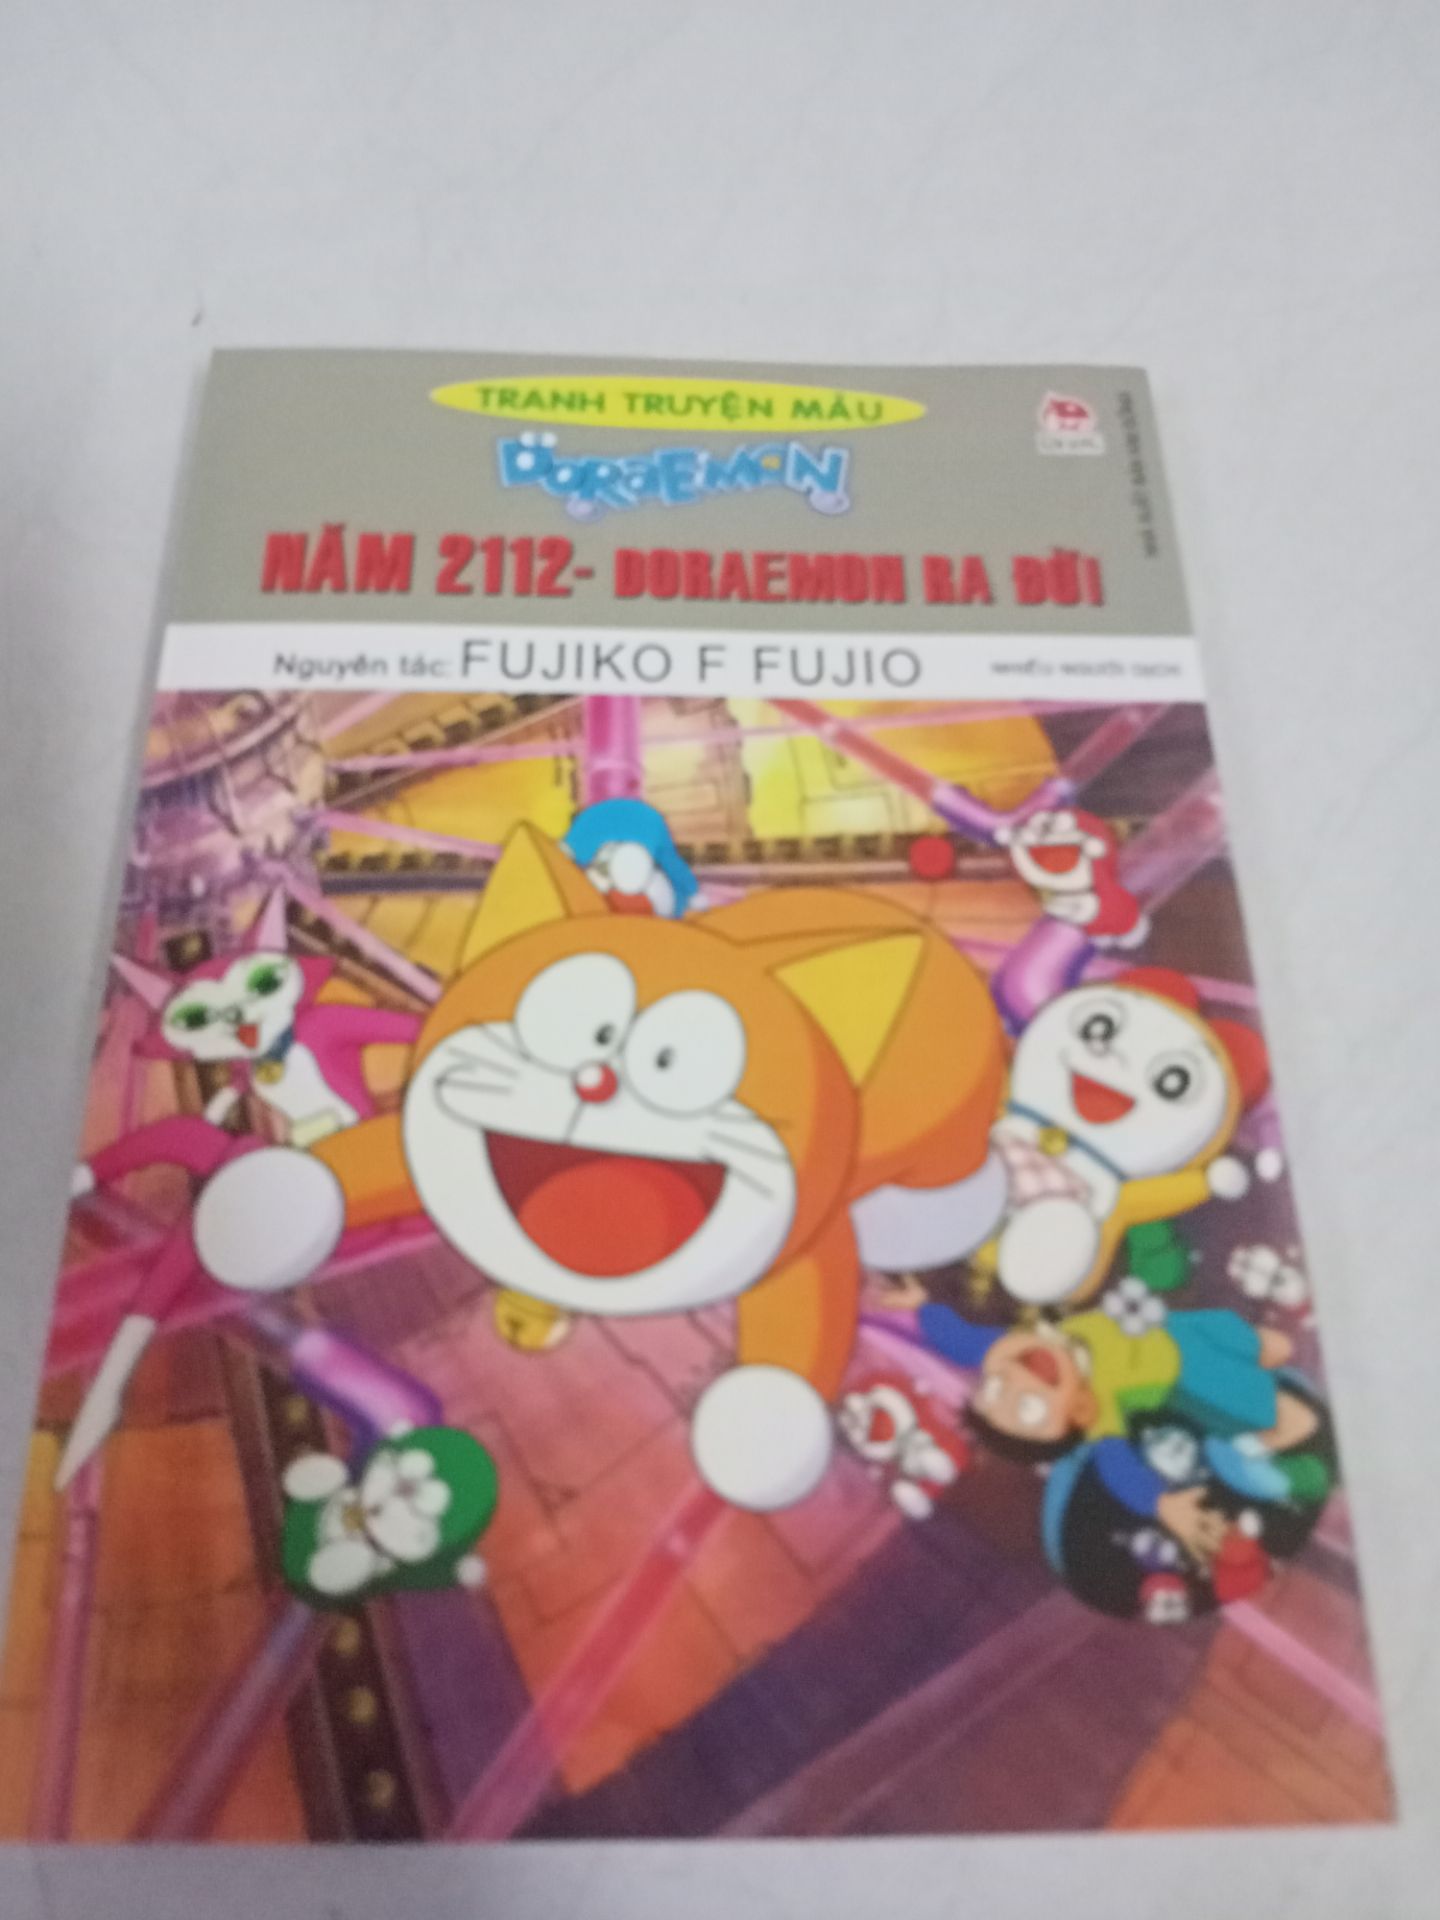 Doraemon Tranh Truyện Màu - Năm 2112 Doraemon Ra Đời